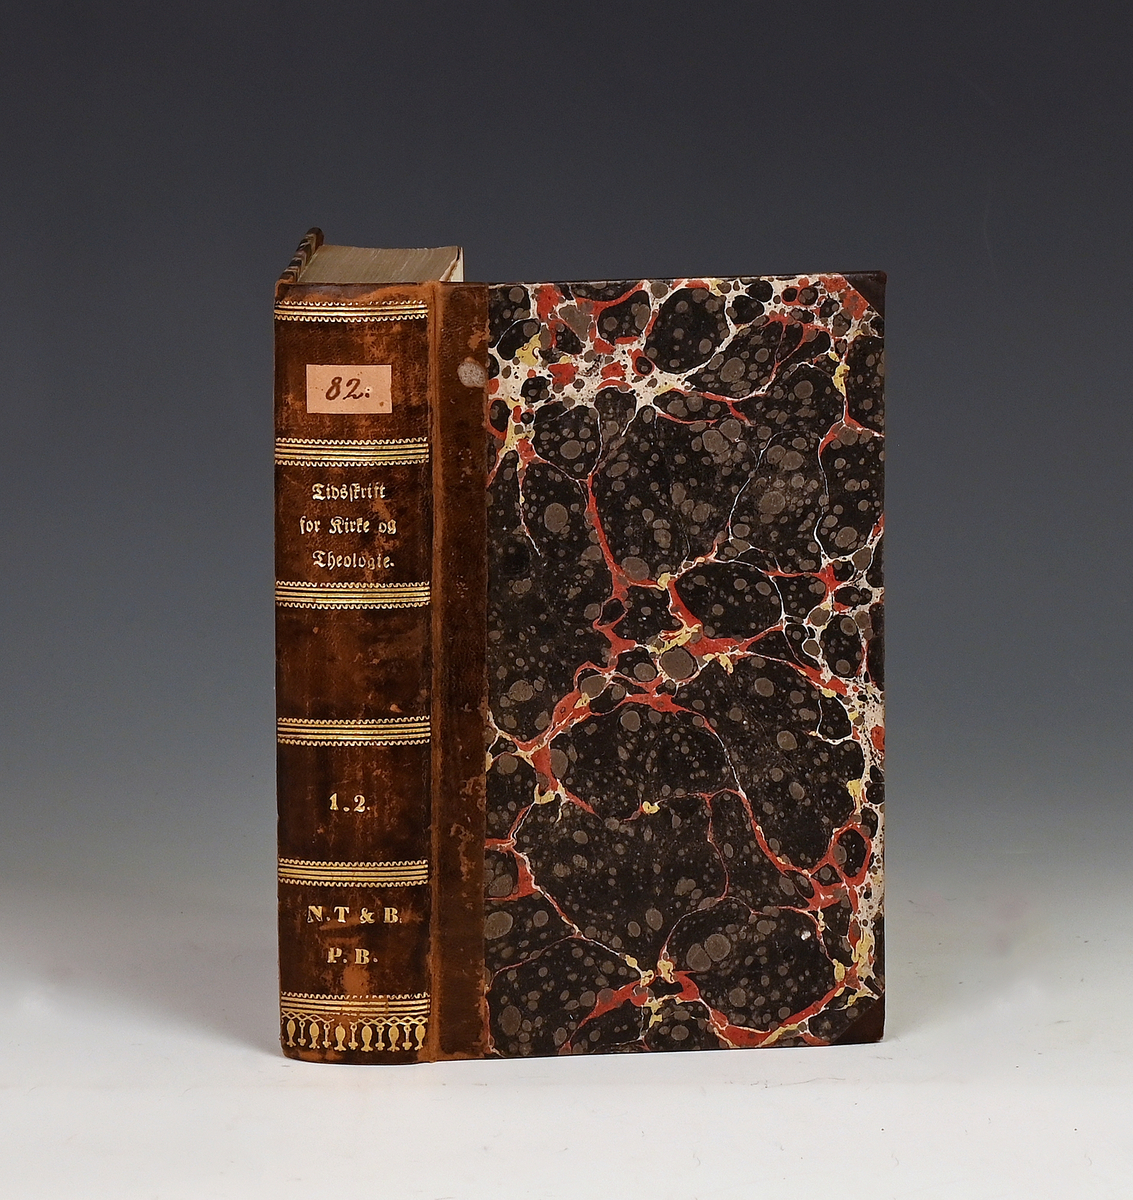 Tidsskrift for kirke og Theologie. Udg. af Jens Møller. I-IV
Kbhv. 1832. 

Første og andre bind bundet sammen; 1511-1512